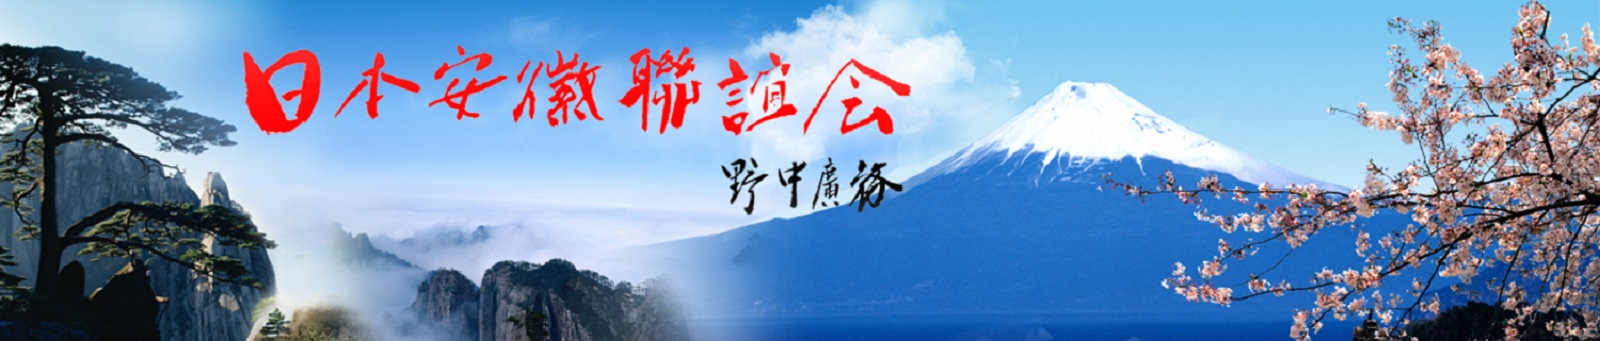 日本安徽联谊会官方网站 Logo